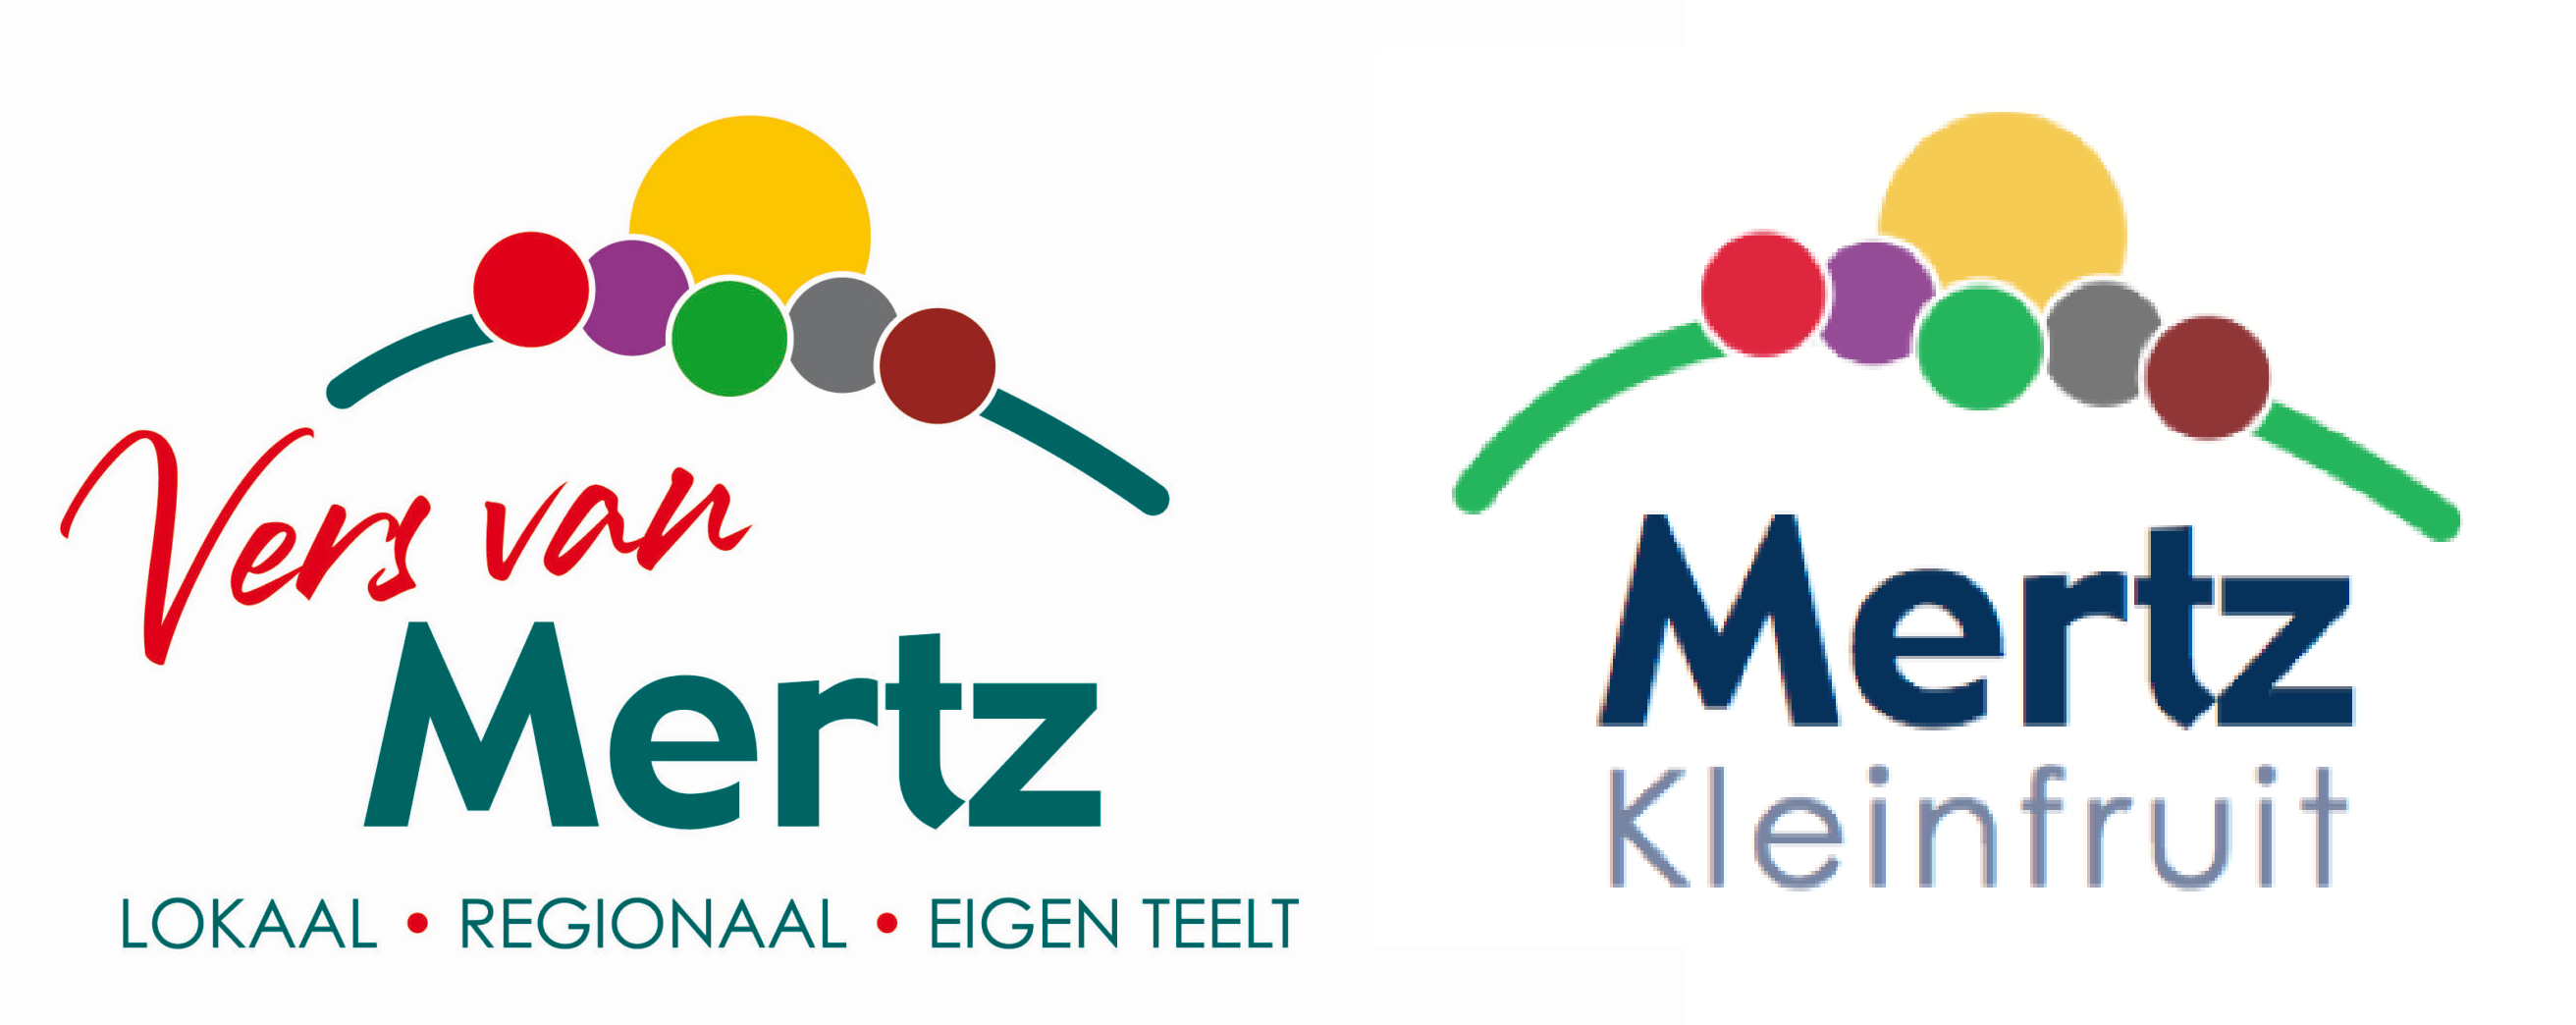 logo Mertz kleinfruit en logo vers van Mertz